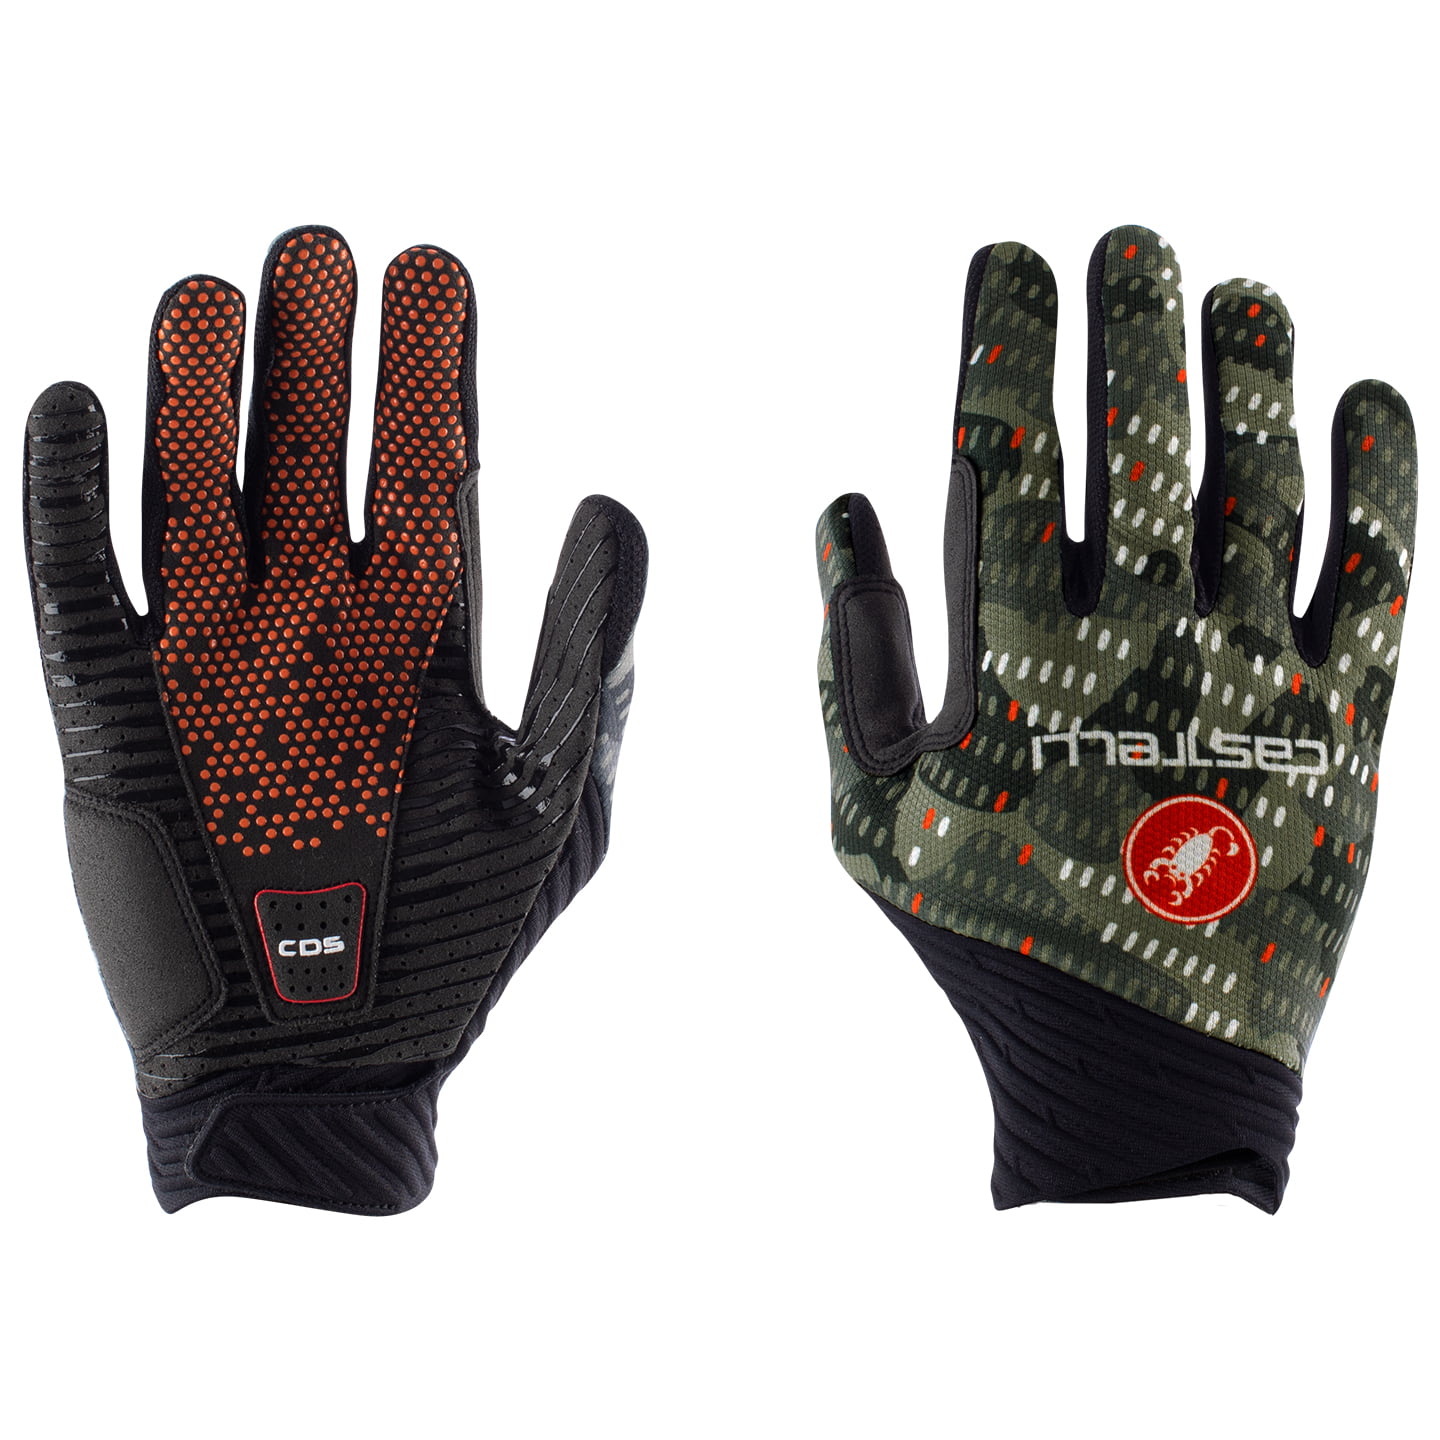 CASTELLI CW 6.1 Unlimited Full Finger Gloves Cycling Gloves, for men, size XL, Cycling gloves, Cycle gear